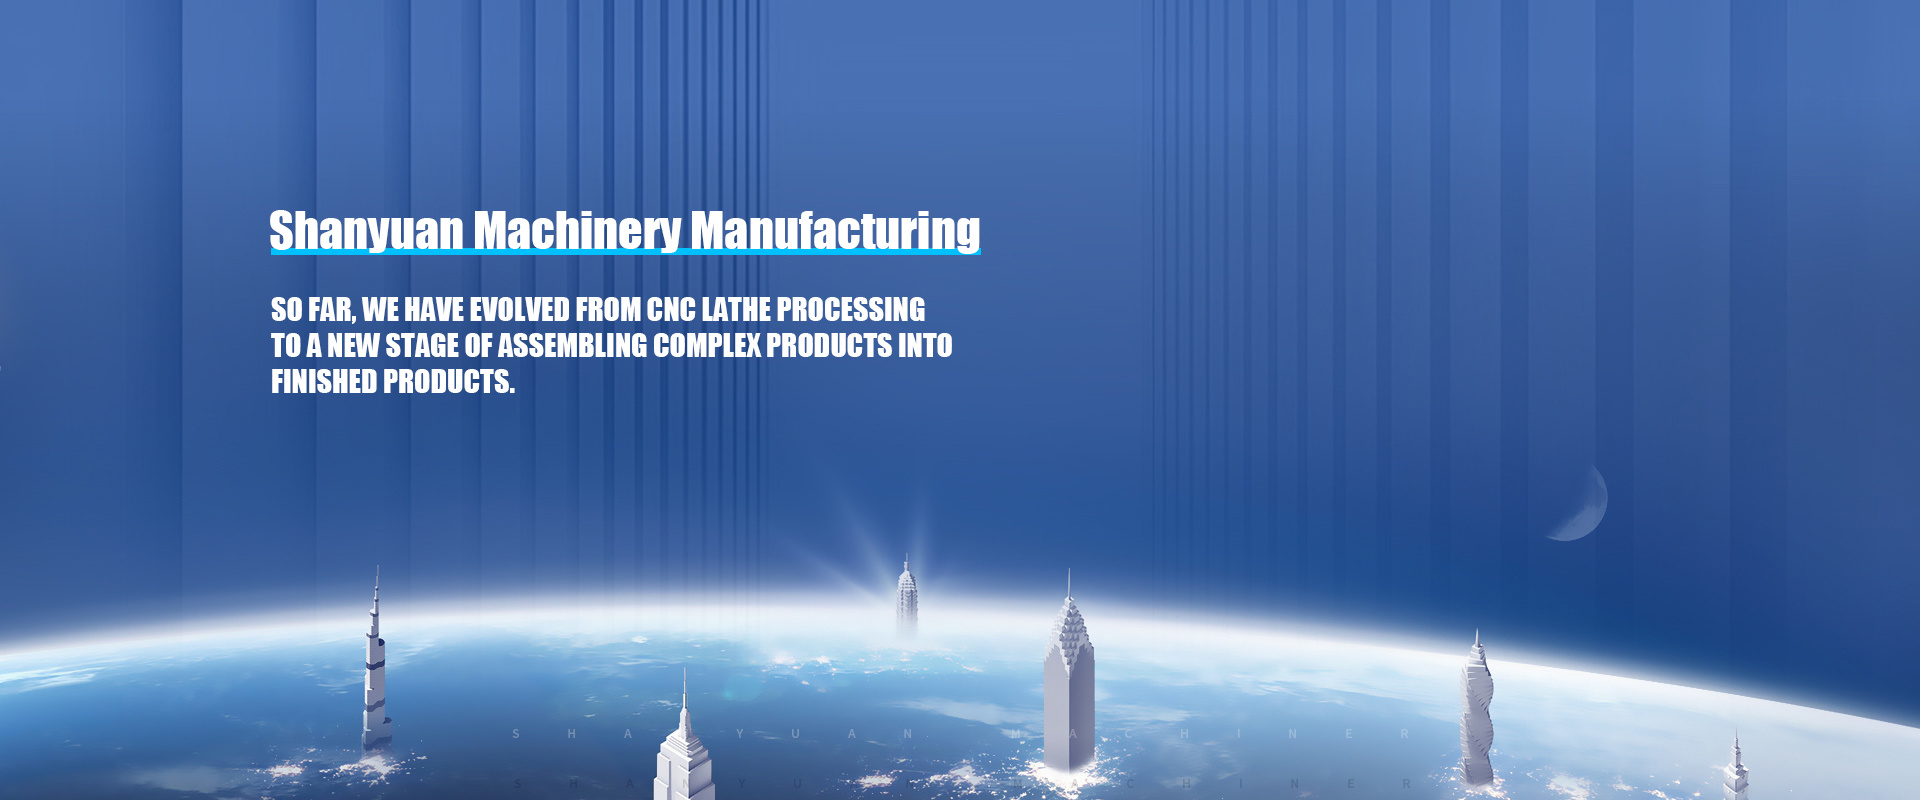 Dalian Shanyuan Machinery Manufacturing Co., Ltd